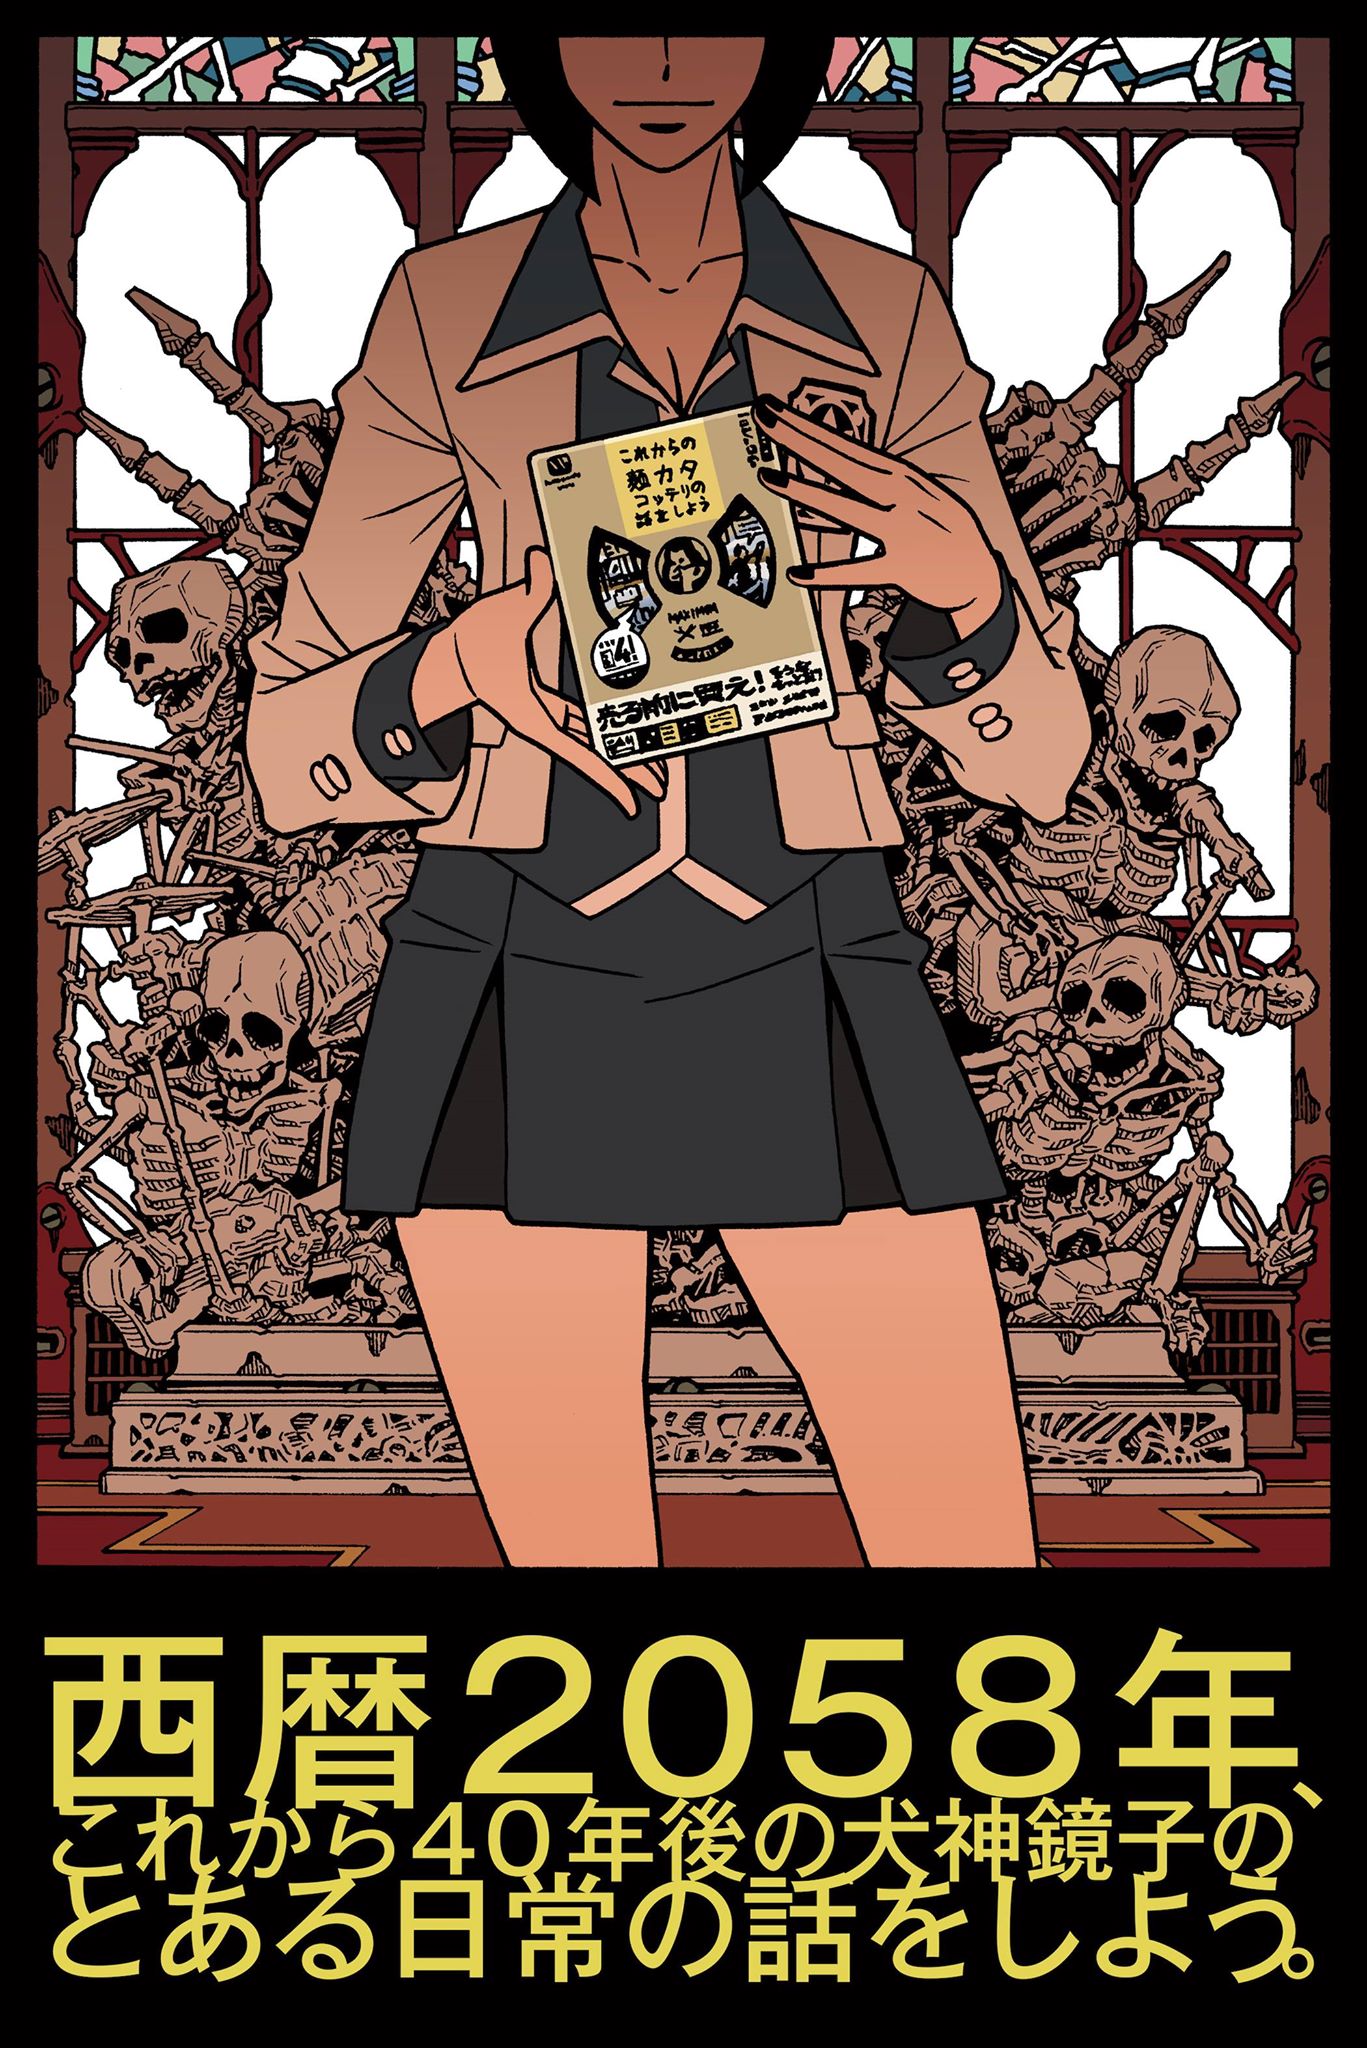 描き下ろし 日本橋ヨヲコがホルモンを漫画に 少女ファイト 鏡子がコッテリ語り尽くす ニコニコニュース